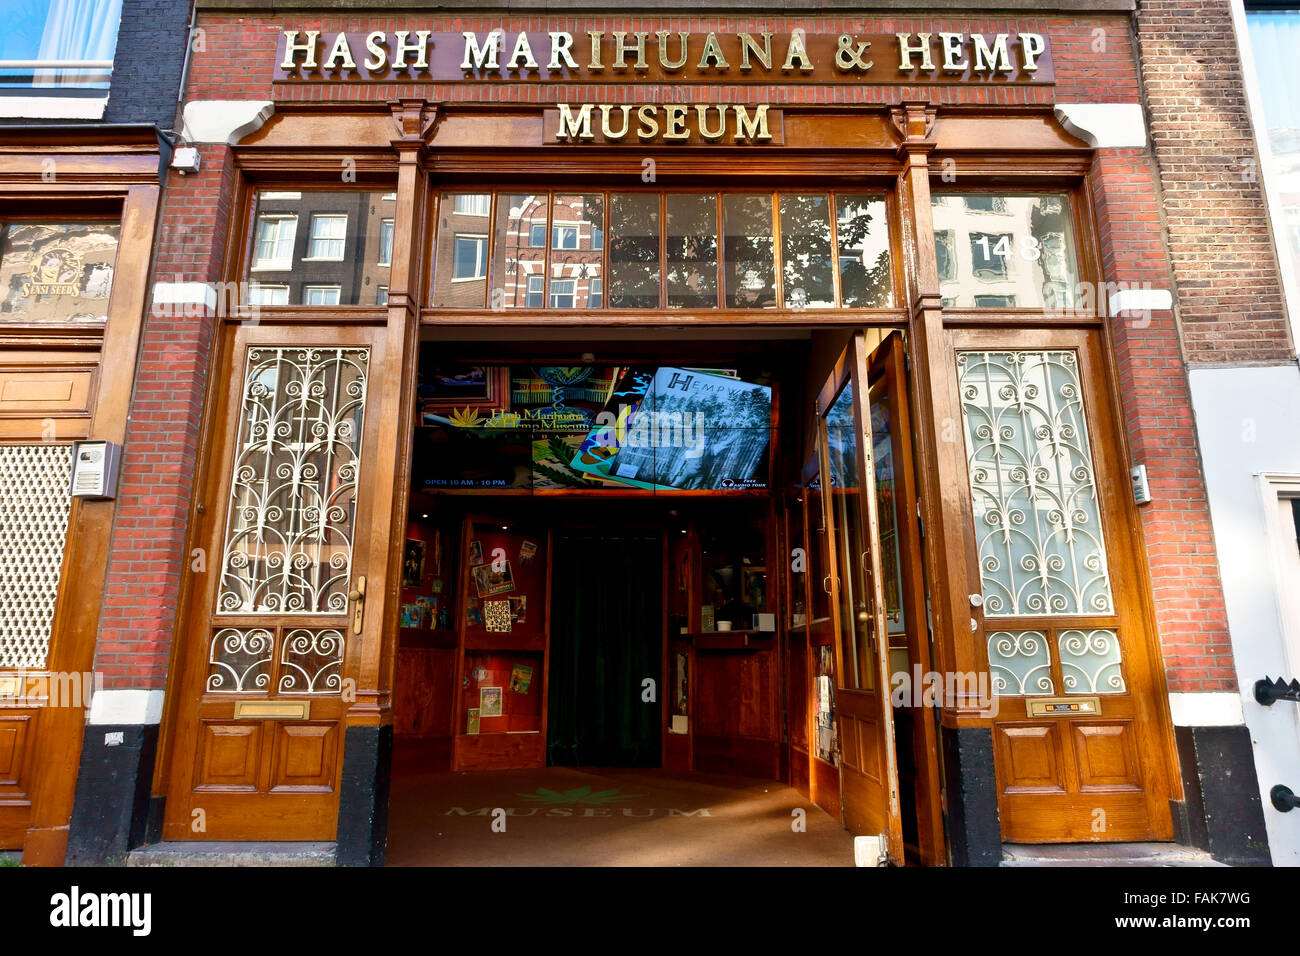 Außenansicht des Hash Marihuana & Hanf Museums. Cannabis, Rotlichtviertel, Amsterdam, Holland, Niederlande, Europa, Europäische Union, EU. Stockfoto